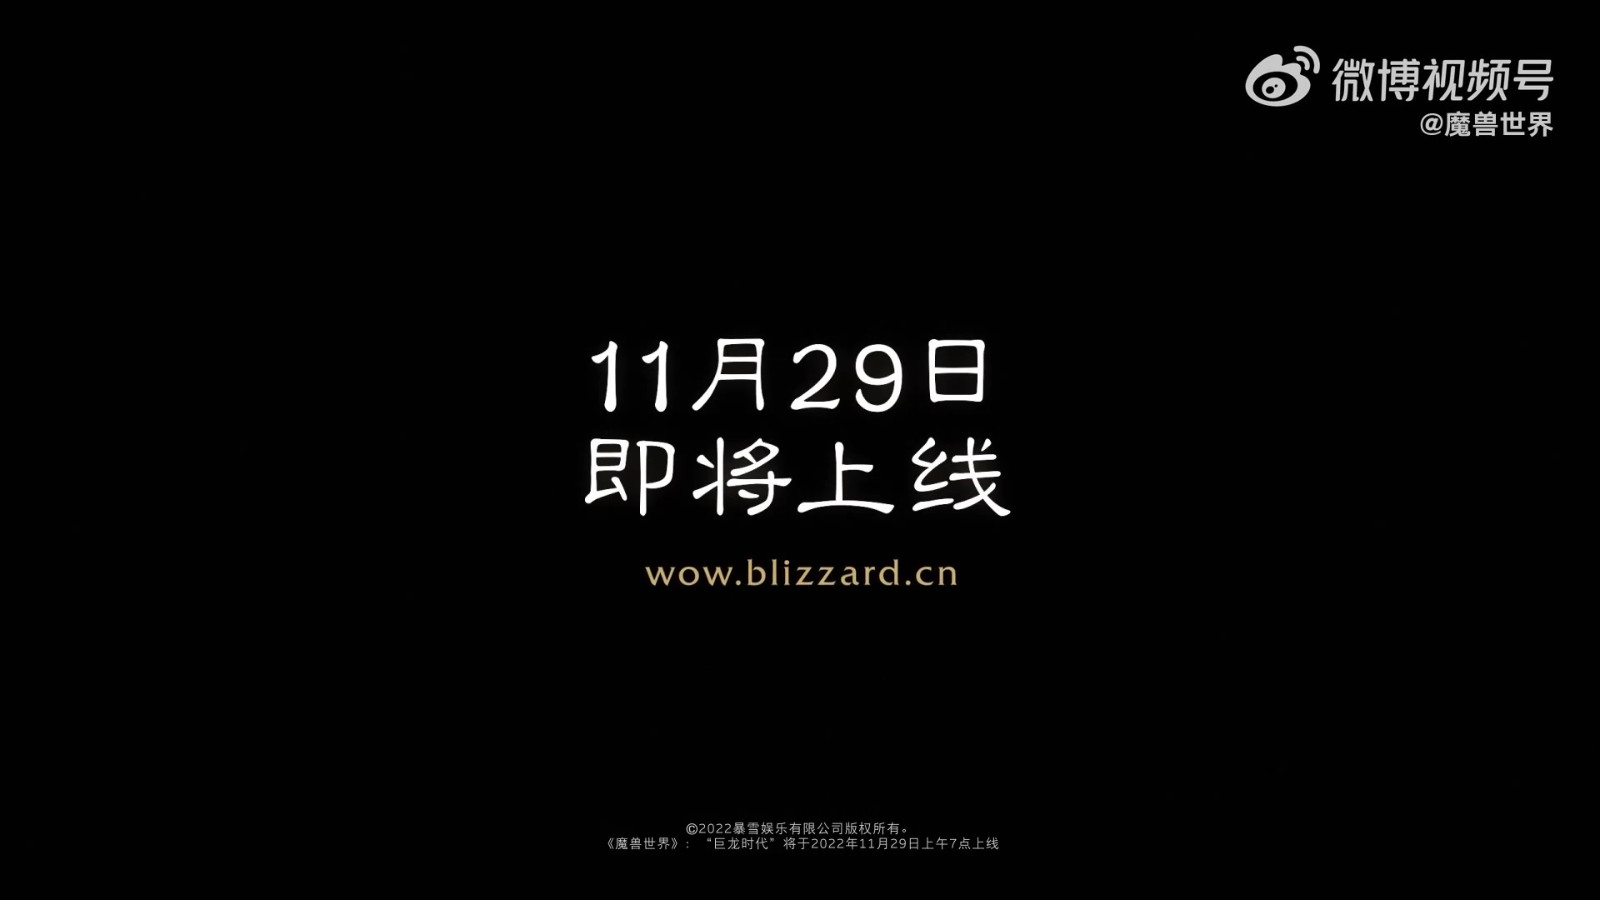 《魔兽世界》巨龙时代新预告 11月29日上线